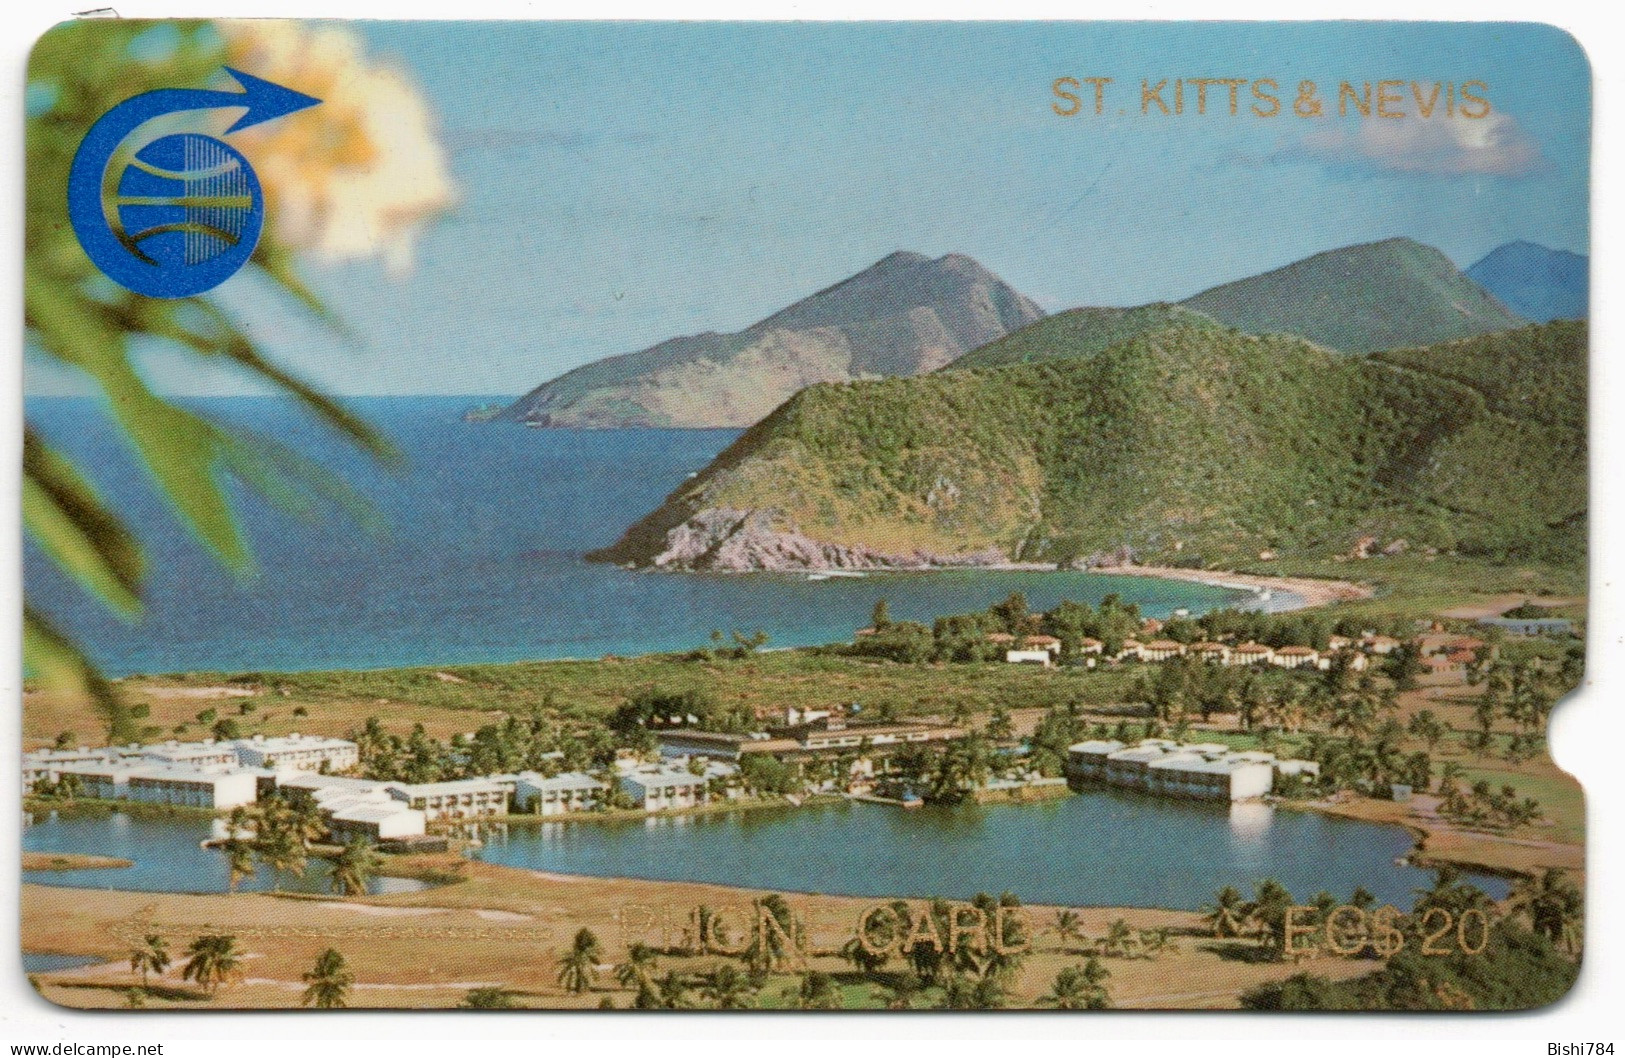 St. Kitts & Nevis - Frigate Bay $20 (Deep Notch) - 1CSKC - St. Kitts & Nevis